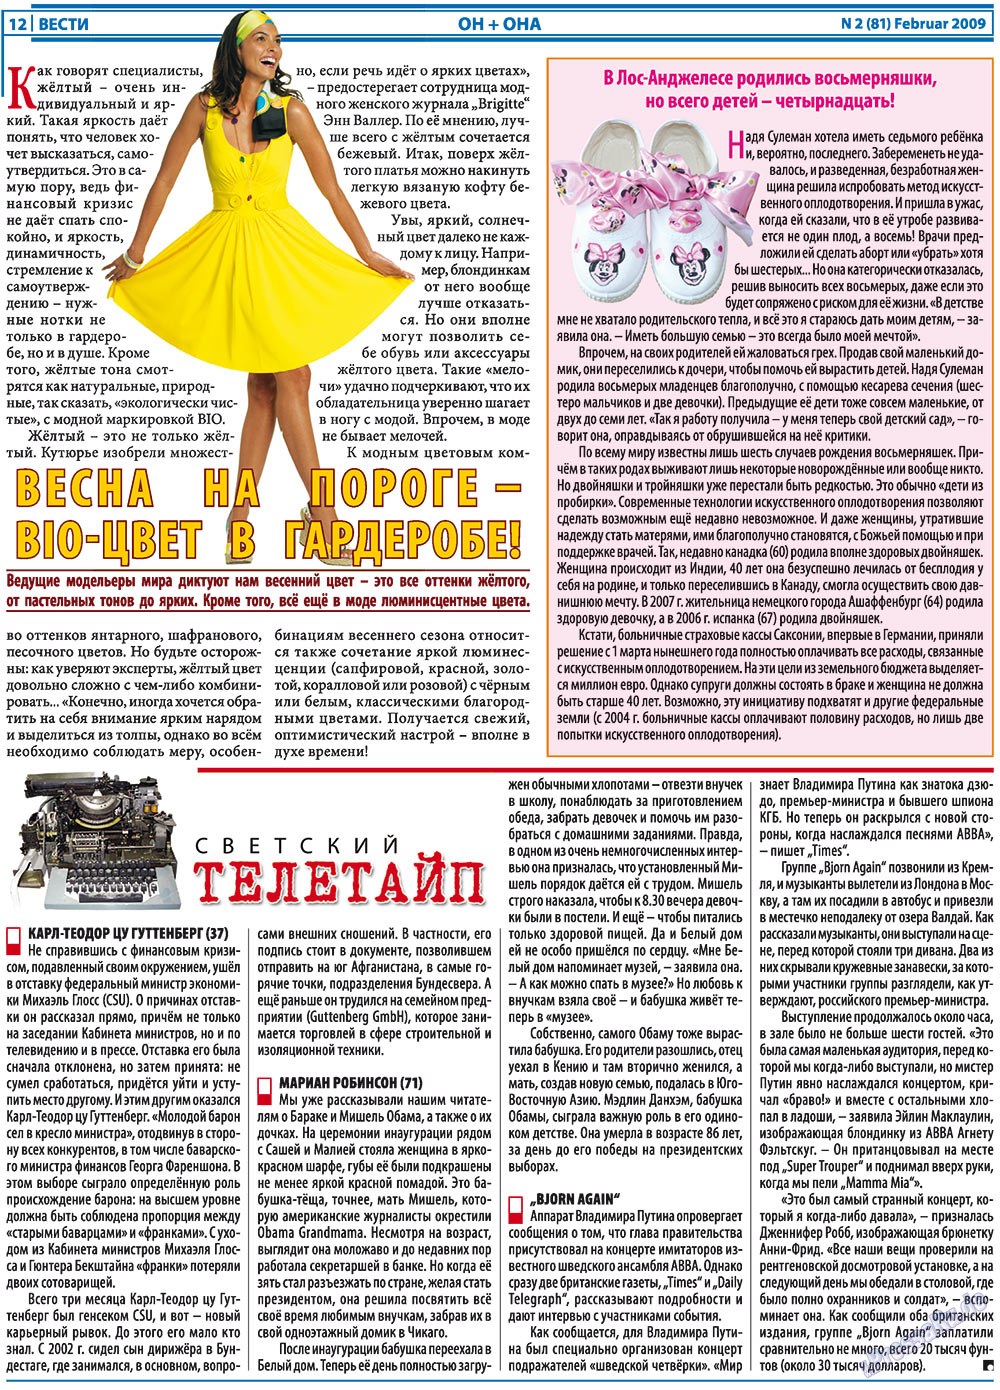 Вести, газета. 2009 №2 стр.12